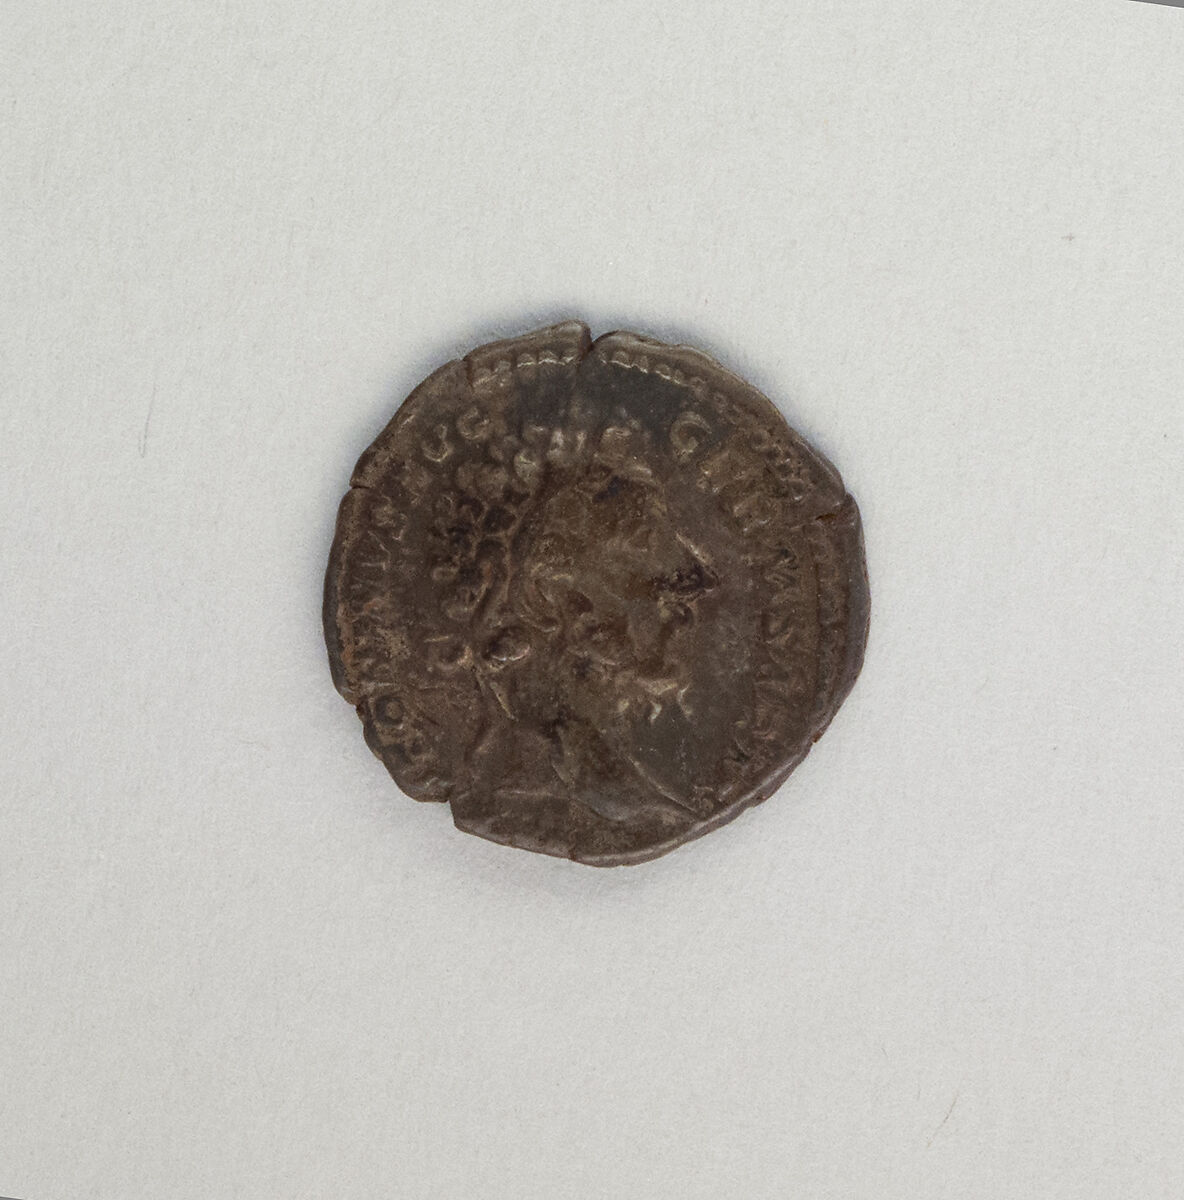 Silver denarius of Marcus Aurelius, Silver, Roman 